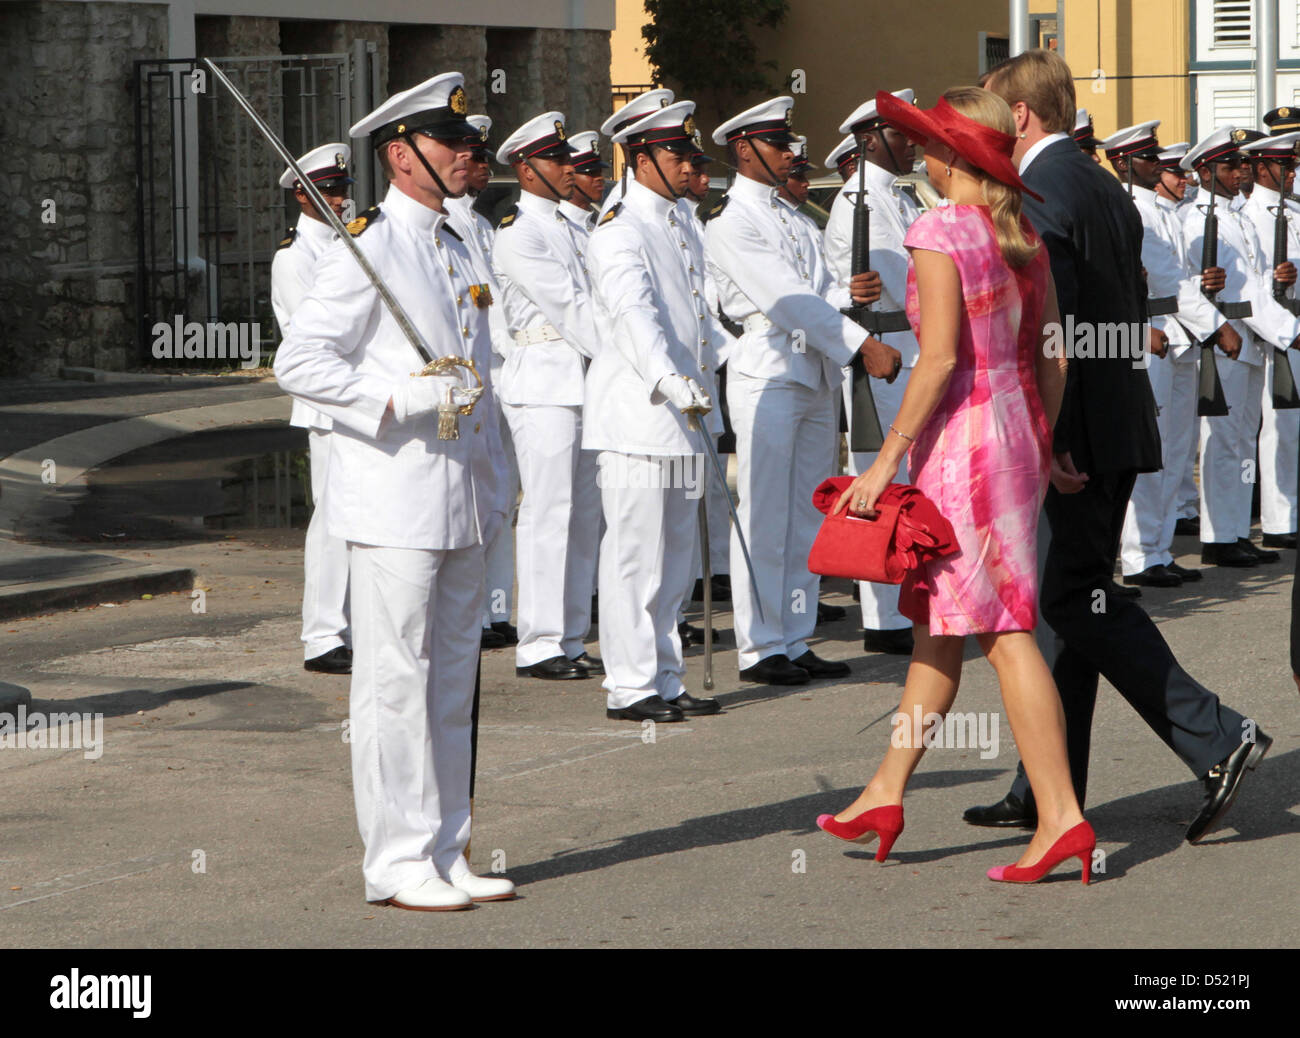 Niederländischen Prinzen Willem-Alexander und Prinzessin Maxima kommen an die Regierung in Willemstad, Curacao, 9. Oktober 2010. Das königliche Paar ist aufgrund der Änderung des rechtlichen Status von den fünf Karibikinseln, die ab dem 10. Oktober auf den niederländischen Antillen bilden in Willemstad. Foto: Albert Nieboer / Niederlande, Stockfoto